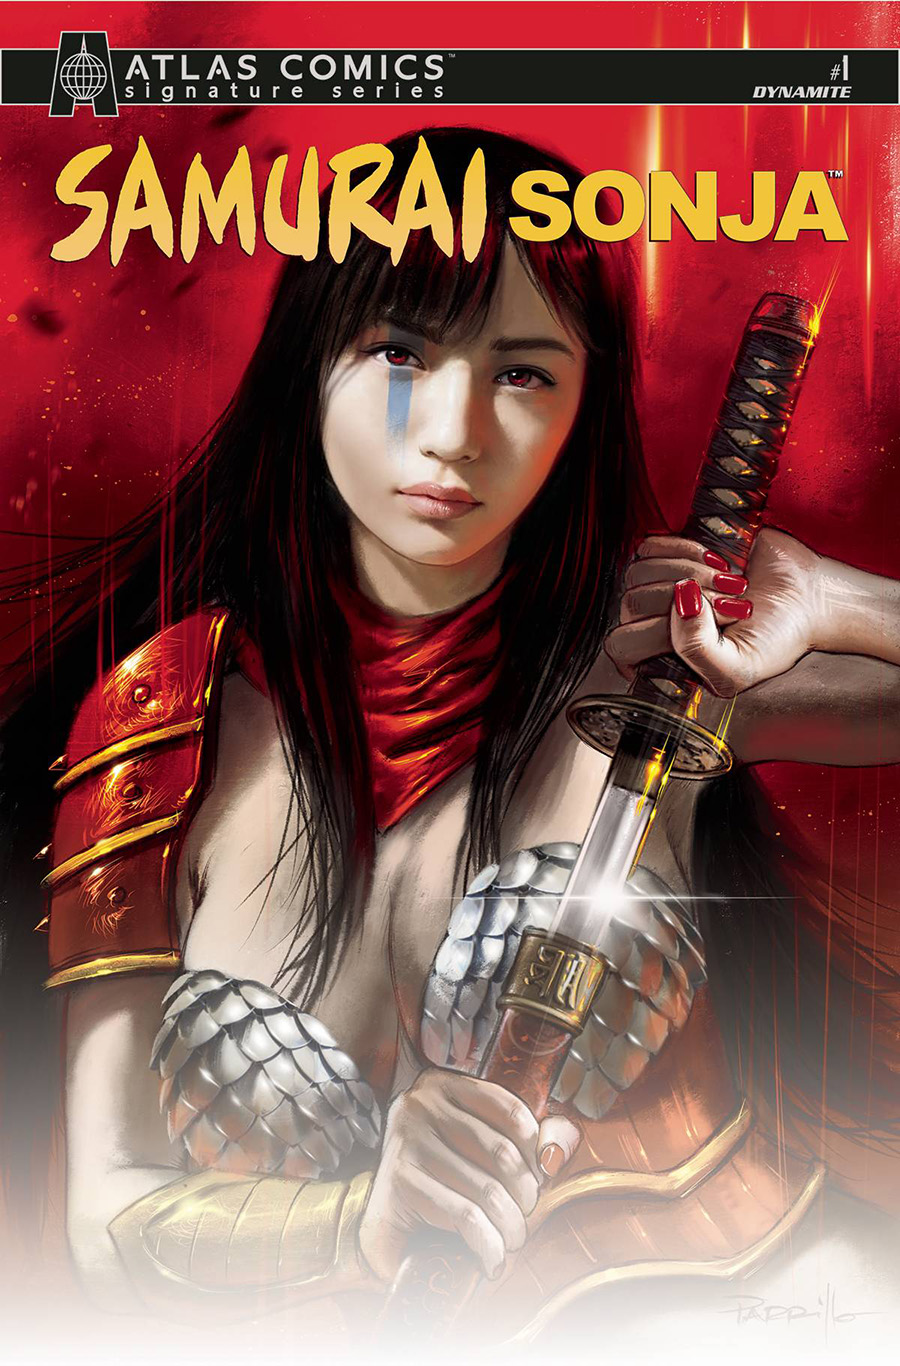 Samurai Sonja #1 Cover N Atlas Comics Signature Series Signed By Jordan Clark